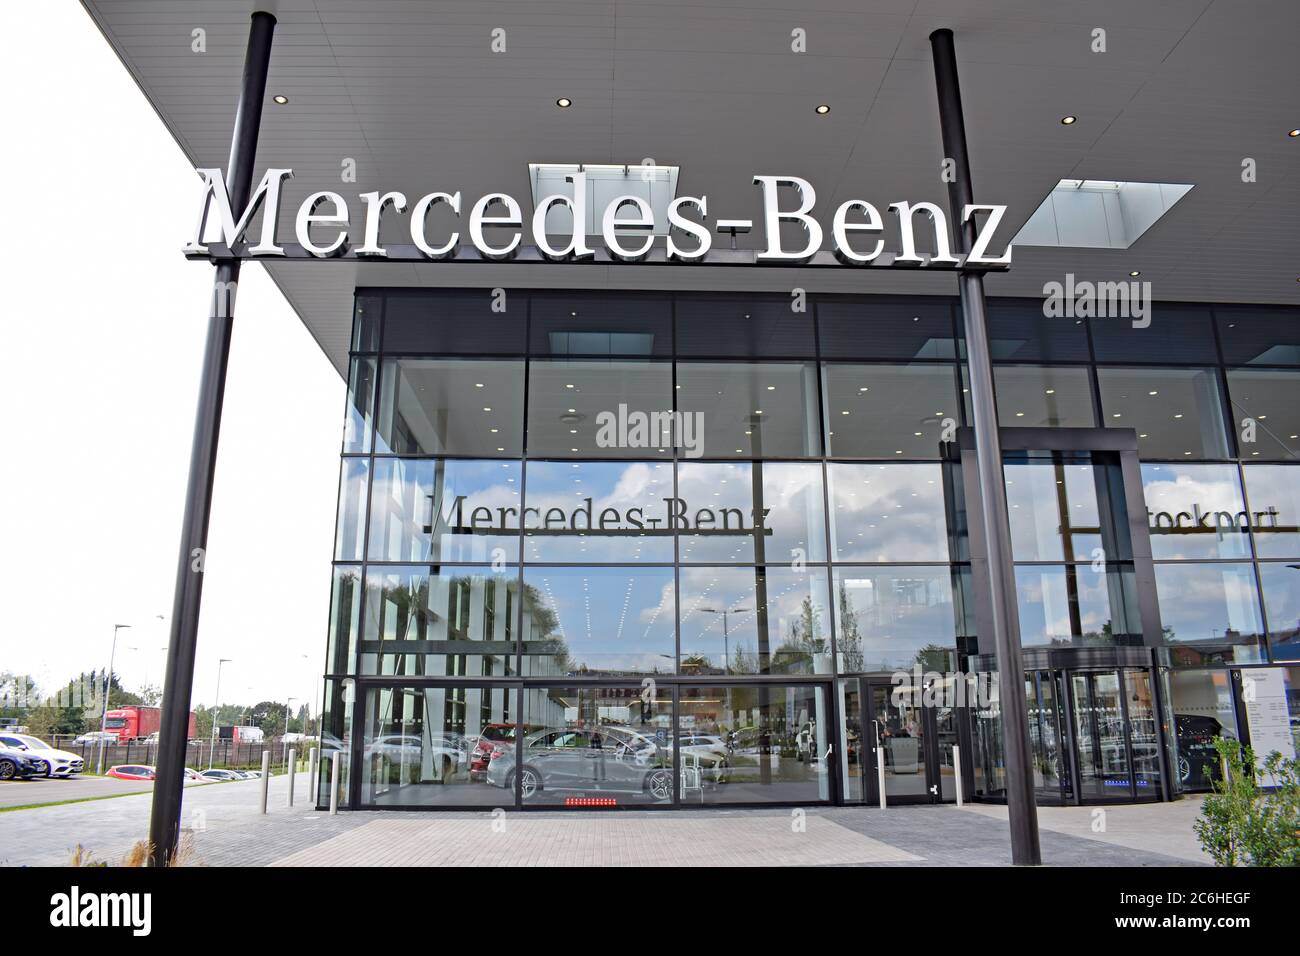 Grand concessionnaire Mercedes Benz Stockport, Royaume-Uni, ouvert le 29 juillet 2019. Détail de la face avant avec réflexions en verre Banque D'Images